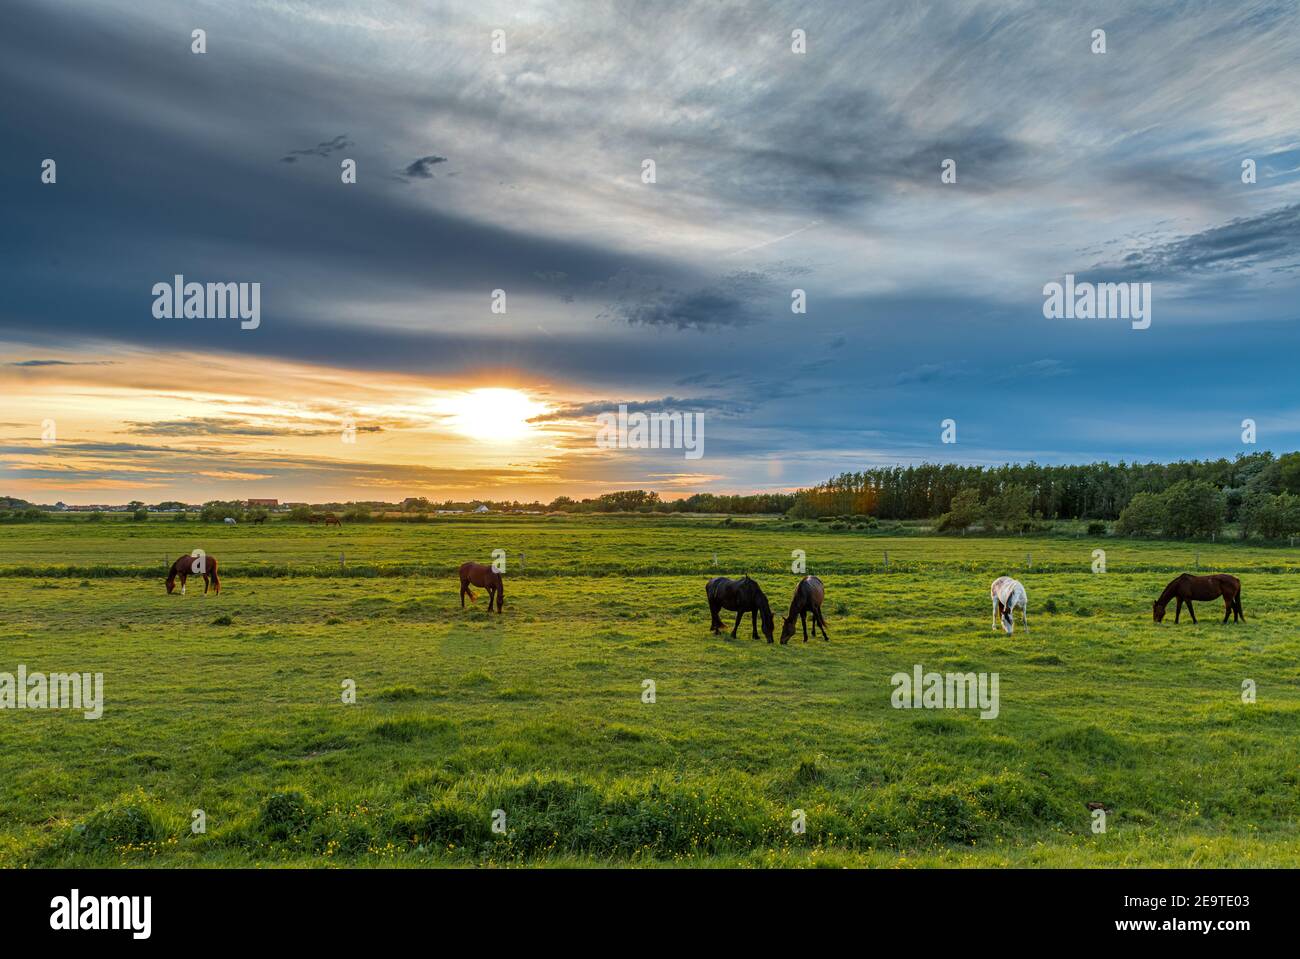 Chevaux dans une prairie au coucher de soleil, France, hauts de France, Sangatte Stock Photo